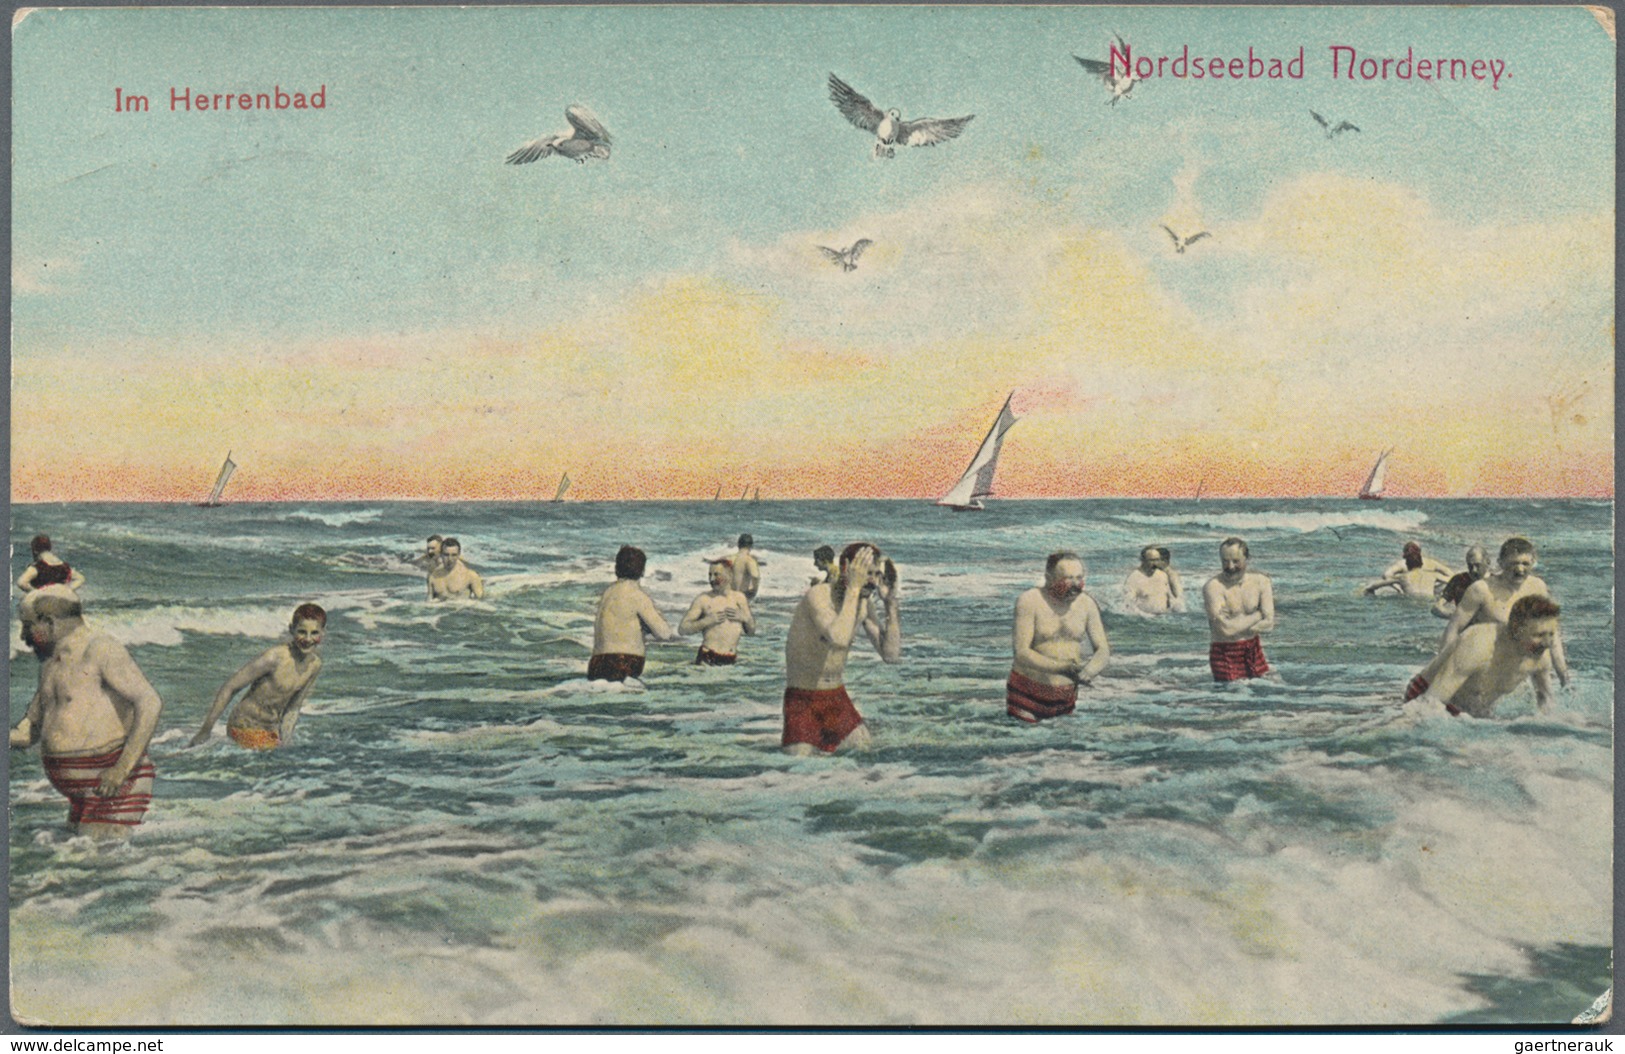 Ansichtskarten: 1910/1990 (ca.), reichhaltiges und vielseitiges Konvolut, dabei ca. 87 Karten "Biede